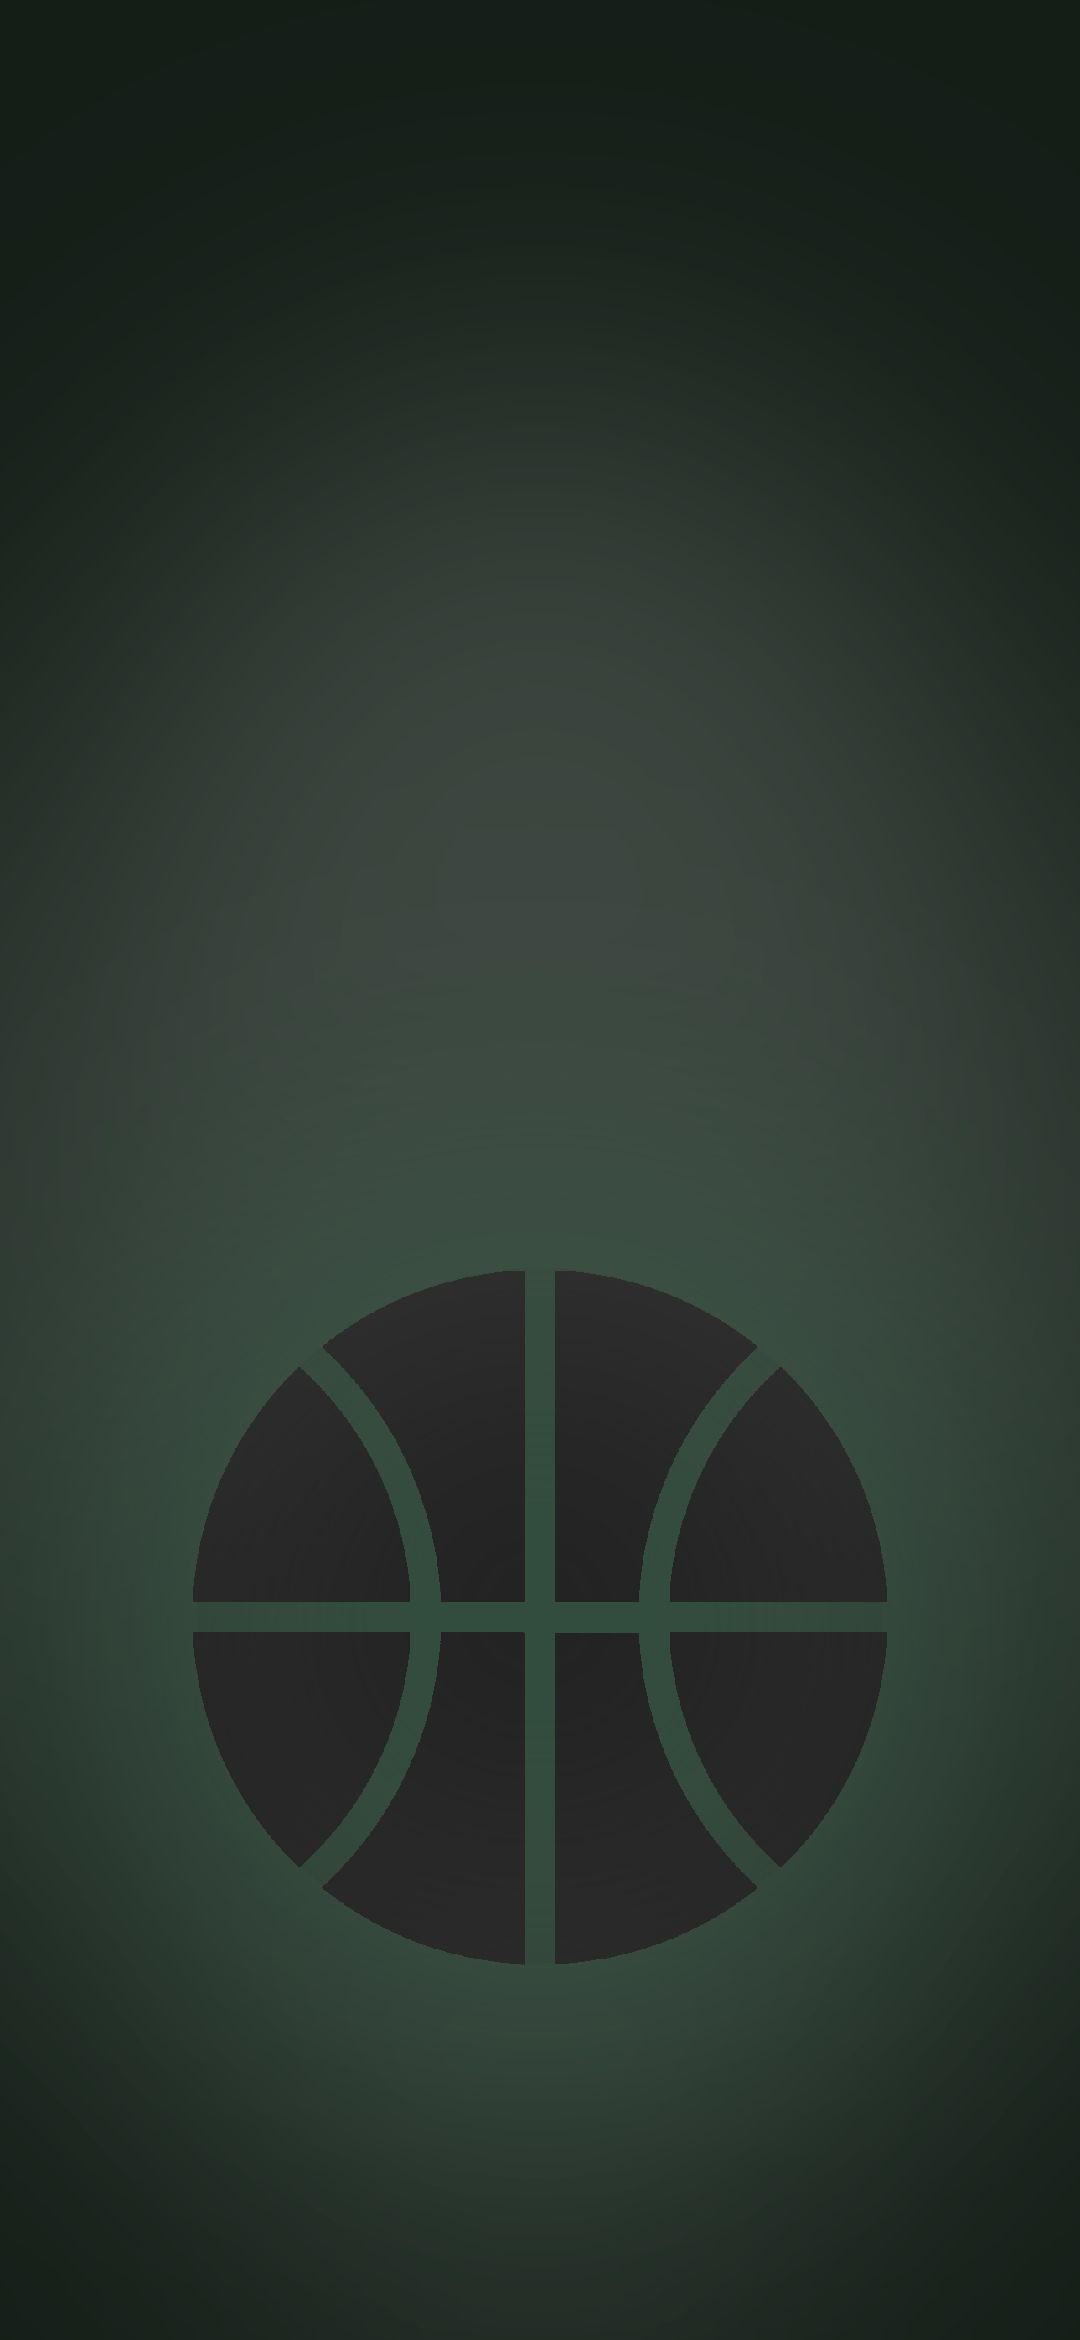 バスケのボール 緑の背景 Google Pixel 4a Android スマホ壁紙 待ち受け スマラン